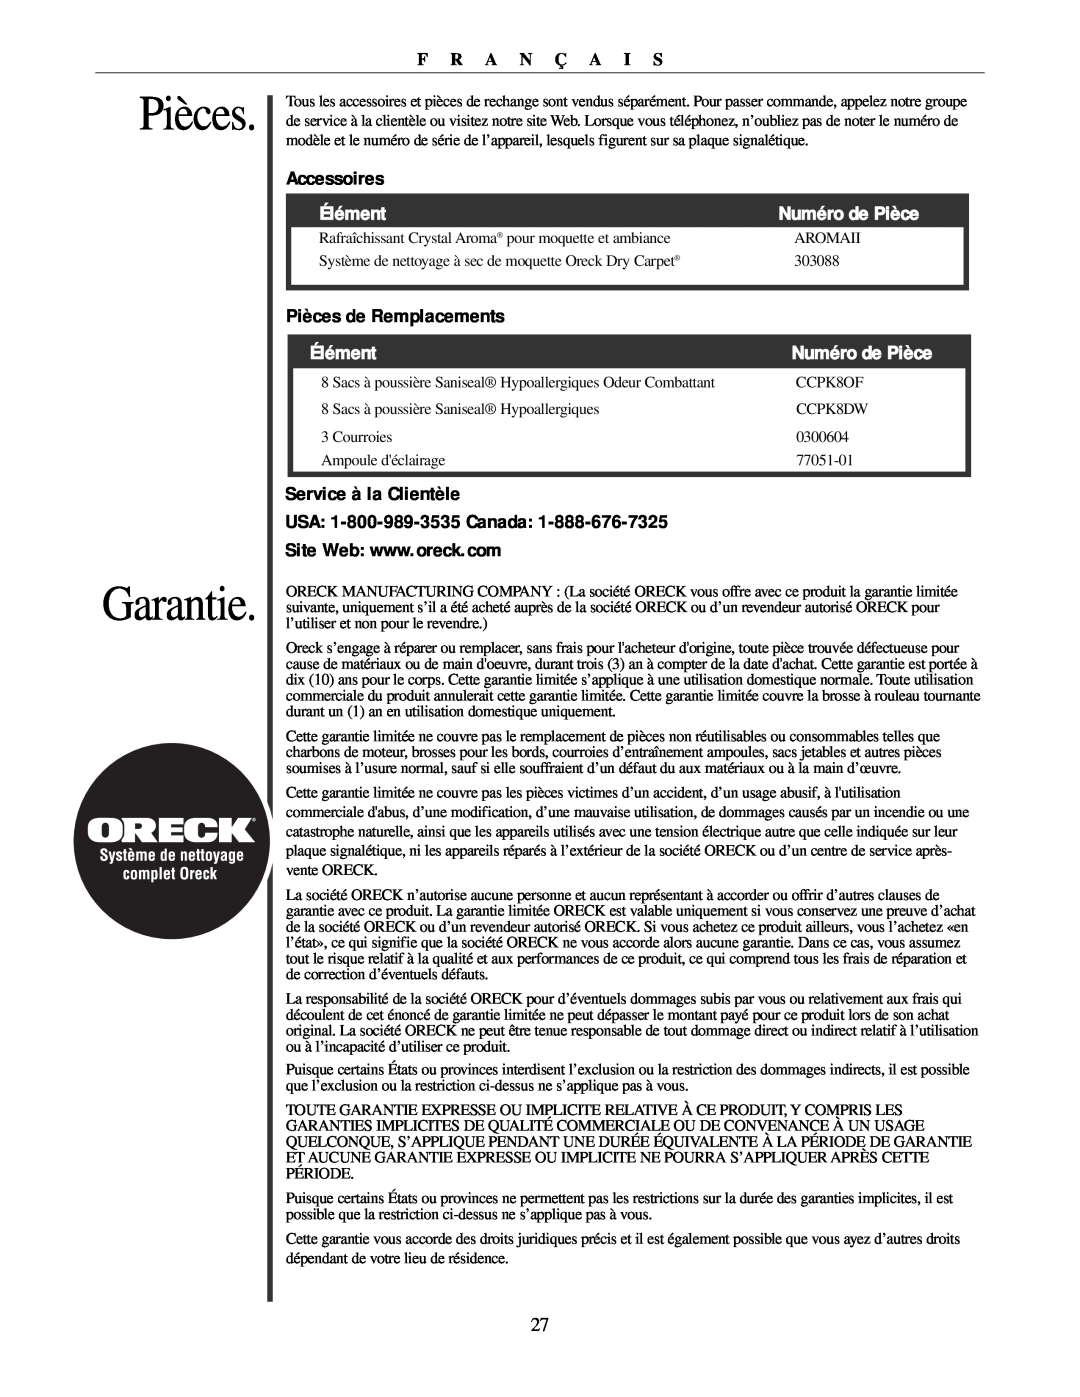 Oreck U3771 manual Pièces Garantie, Accessoires, Élément, Numéro de Pièce, Pièces de Remplacements, Service à la Clientèle 